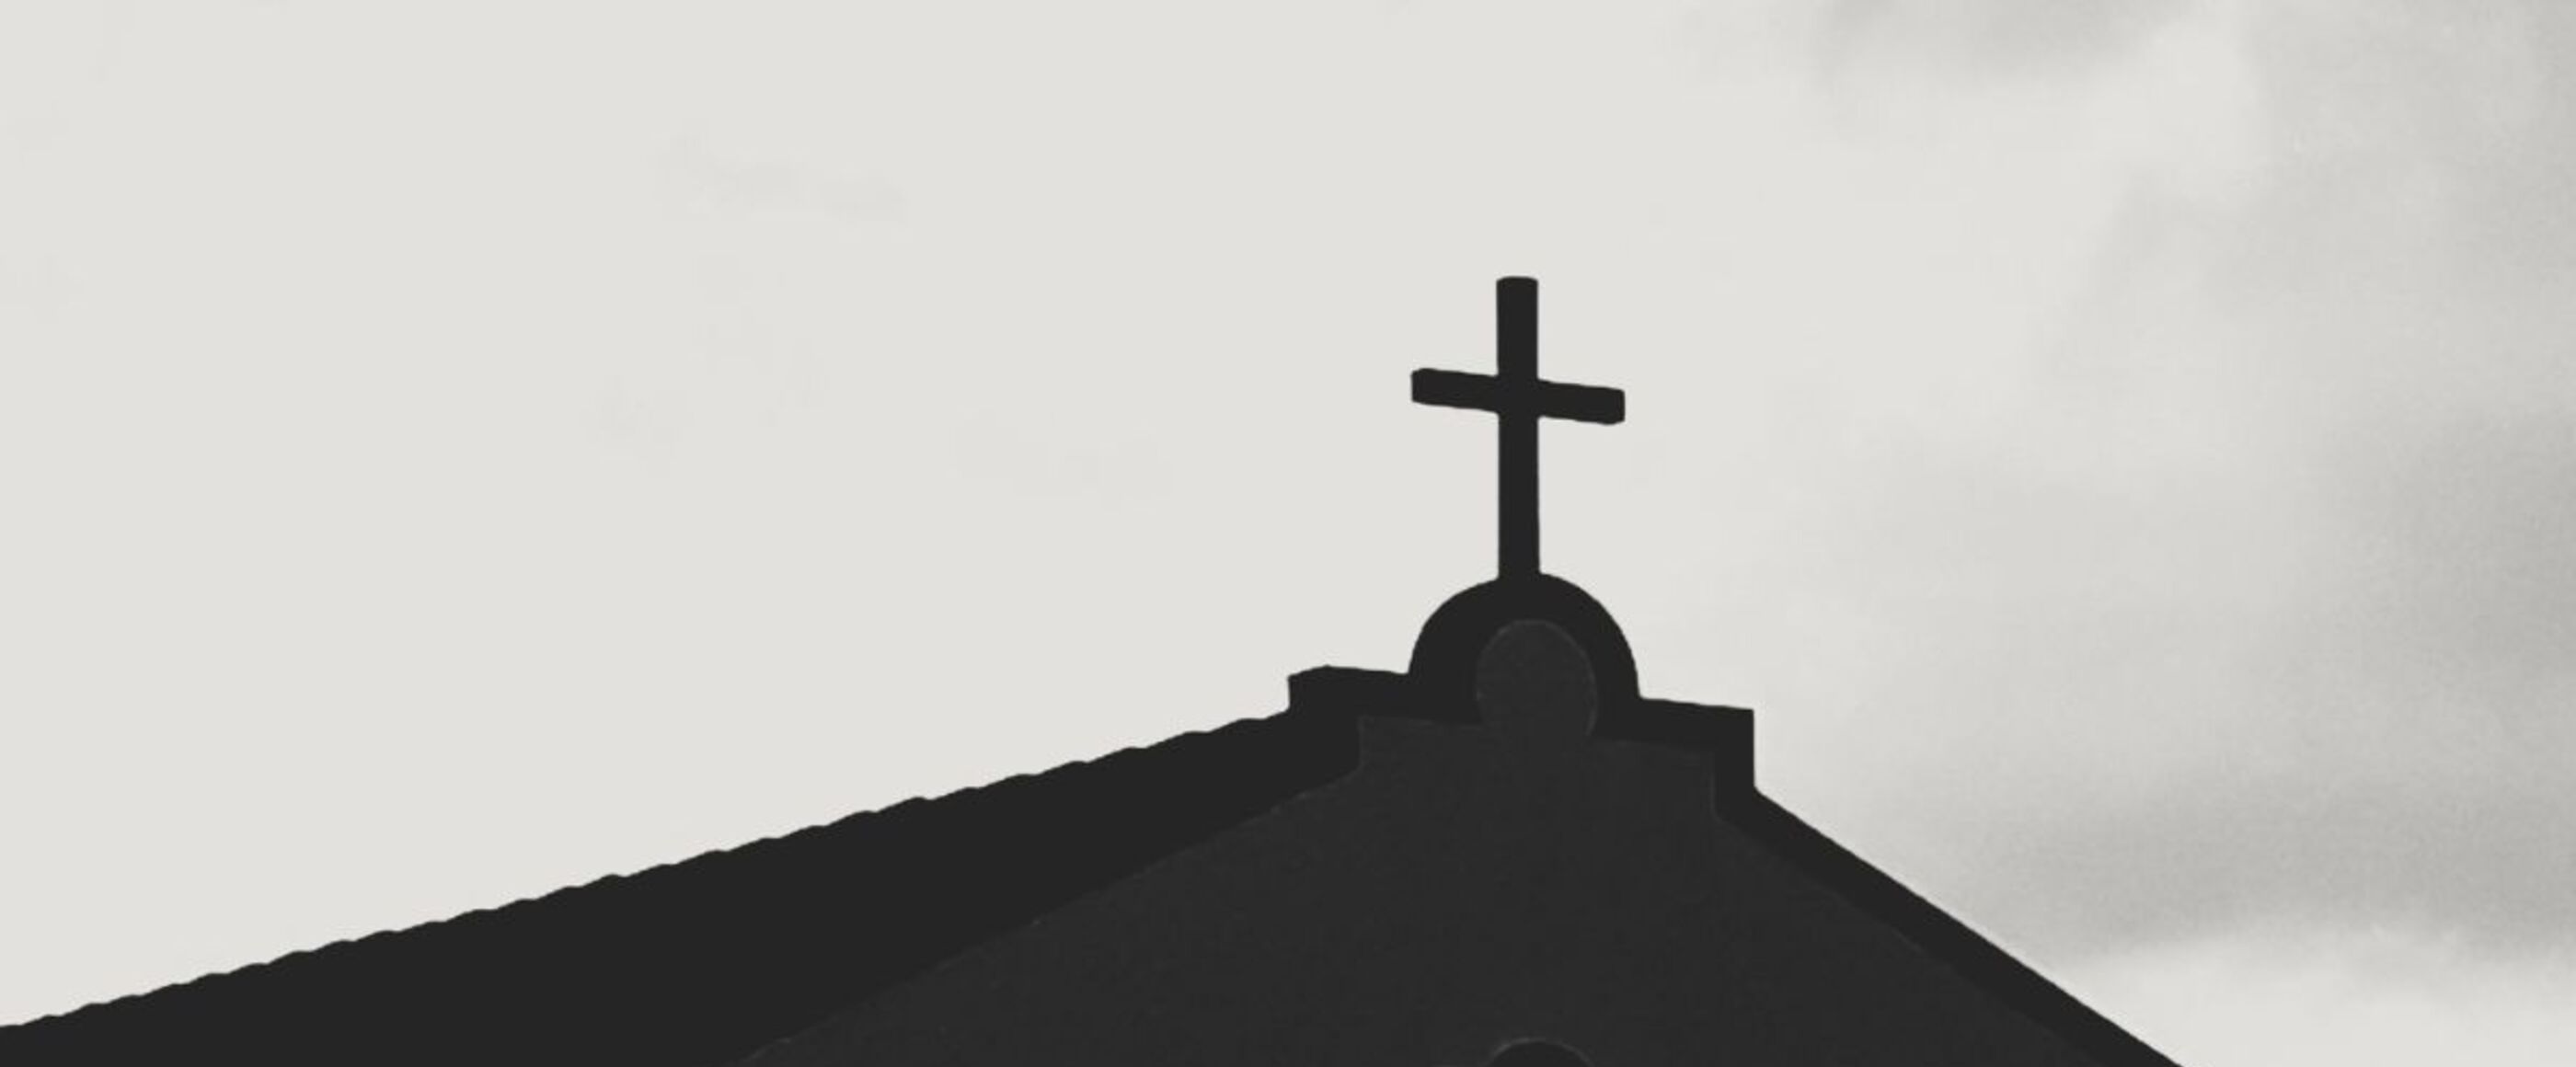 Gegen einen grauen Himmel zeichnet sich auf einem Spitzdach ein Kreuz ab.